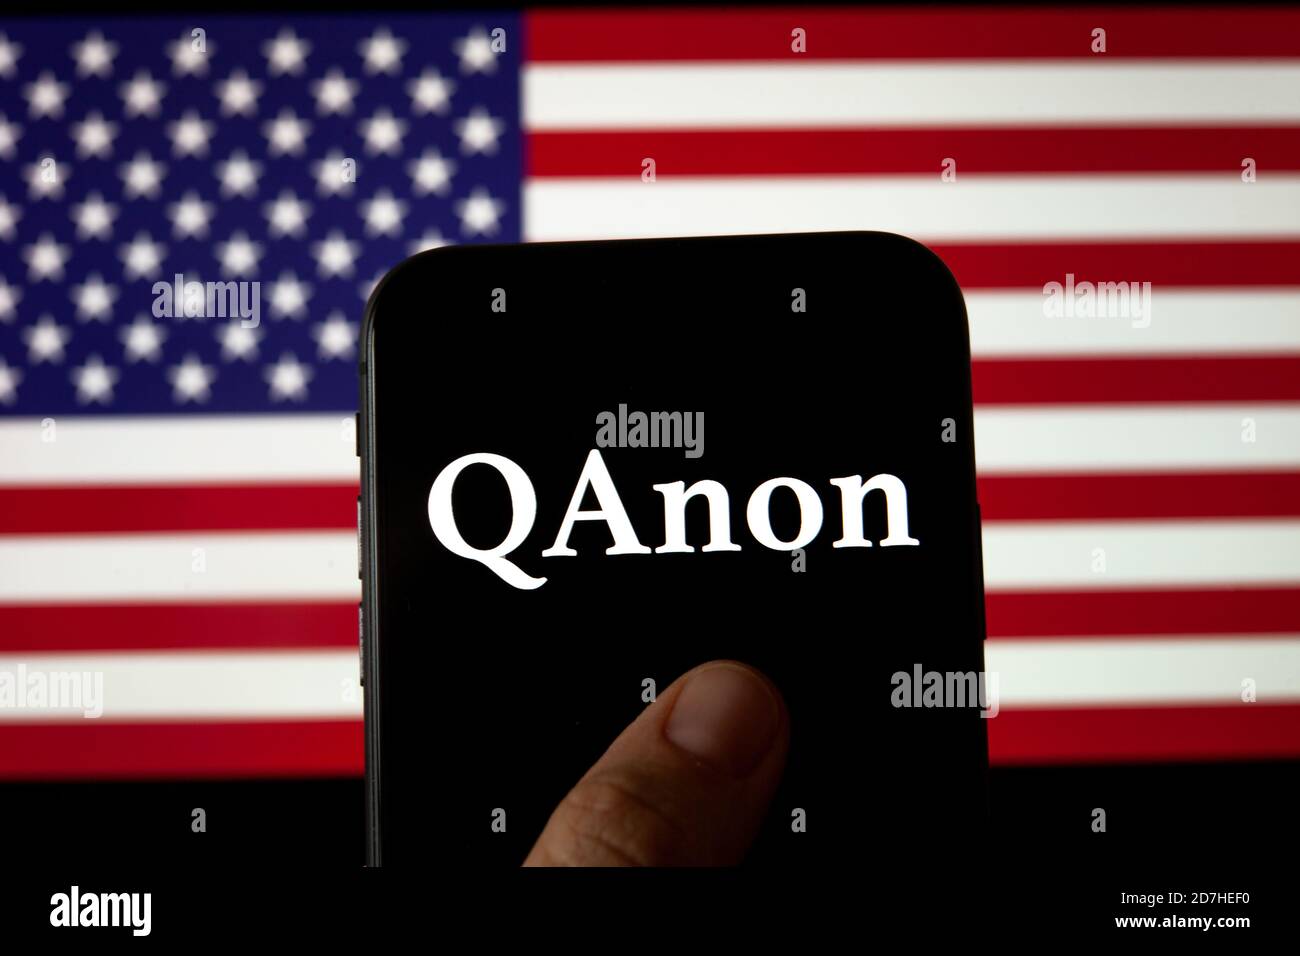 QAnon-Logo auf dem Smartphone, das auf der USA-Flagge platziert ist. Konzept für QAnon oder Q Anon, eine Verschwörungstheorie des tiefen Staates. Stockfoto